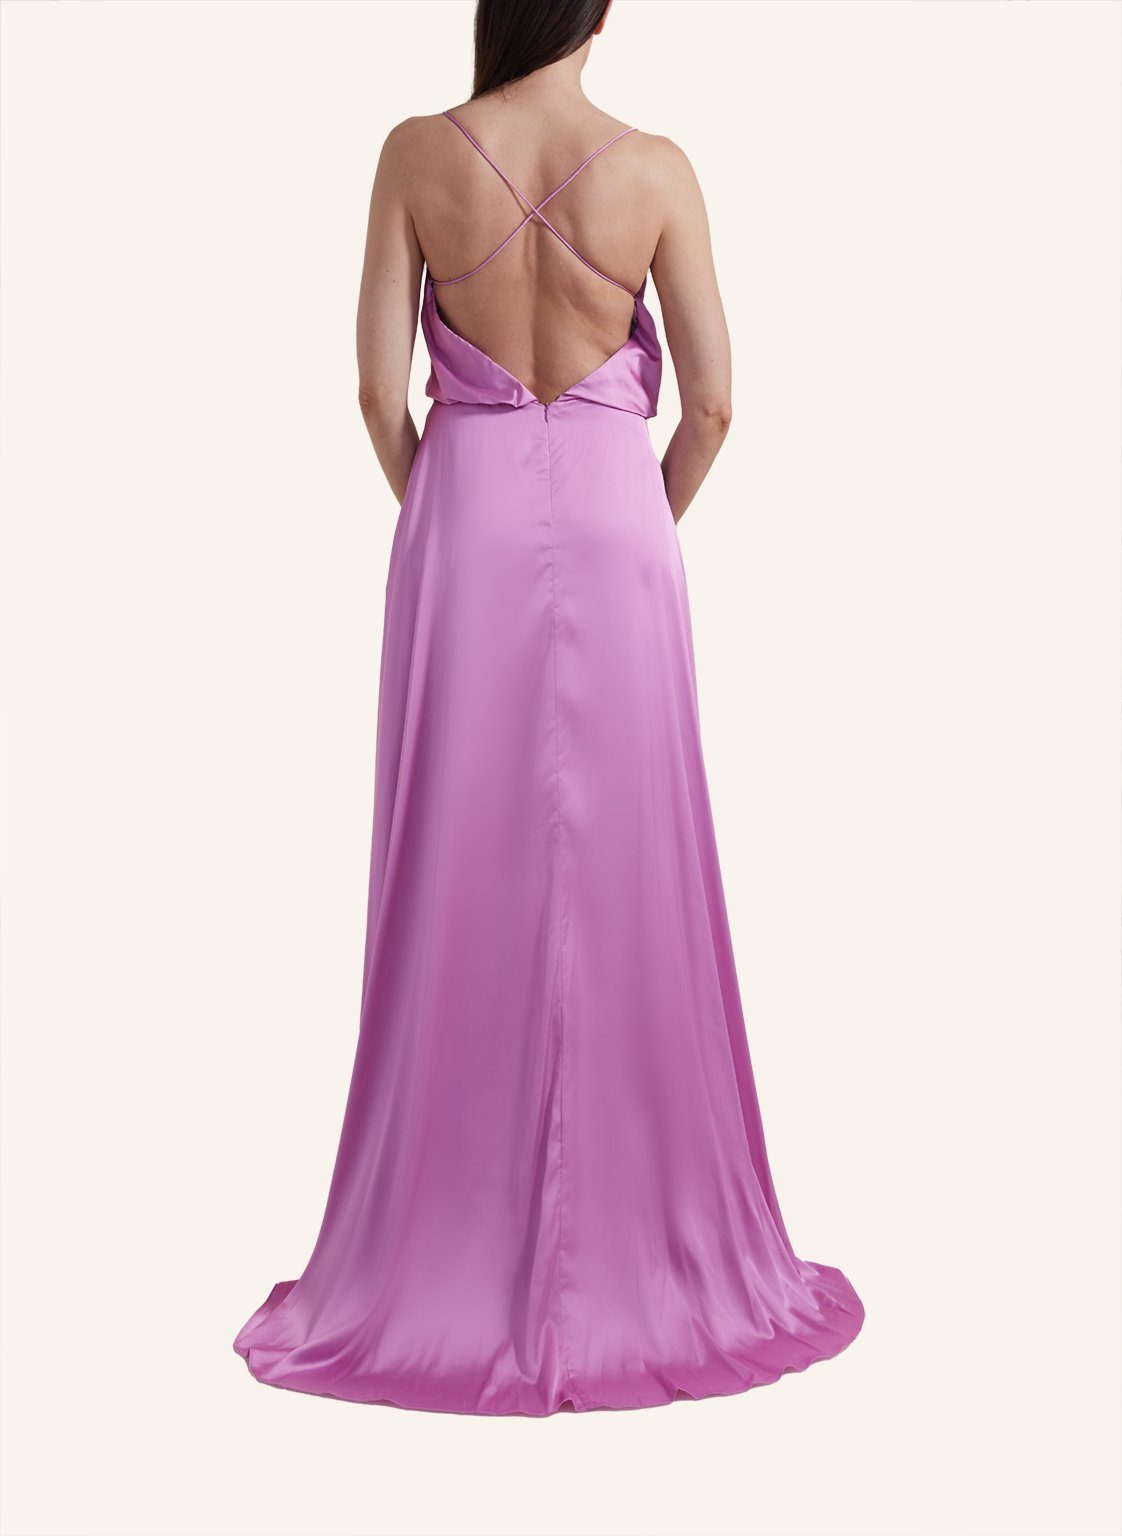 Dress Slip Unique Luxe Abendkleid